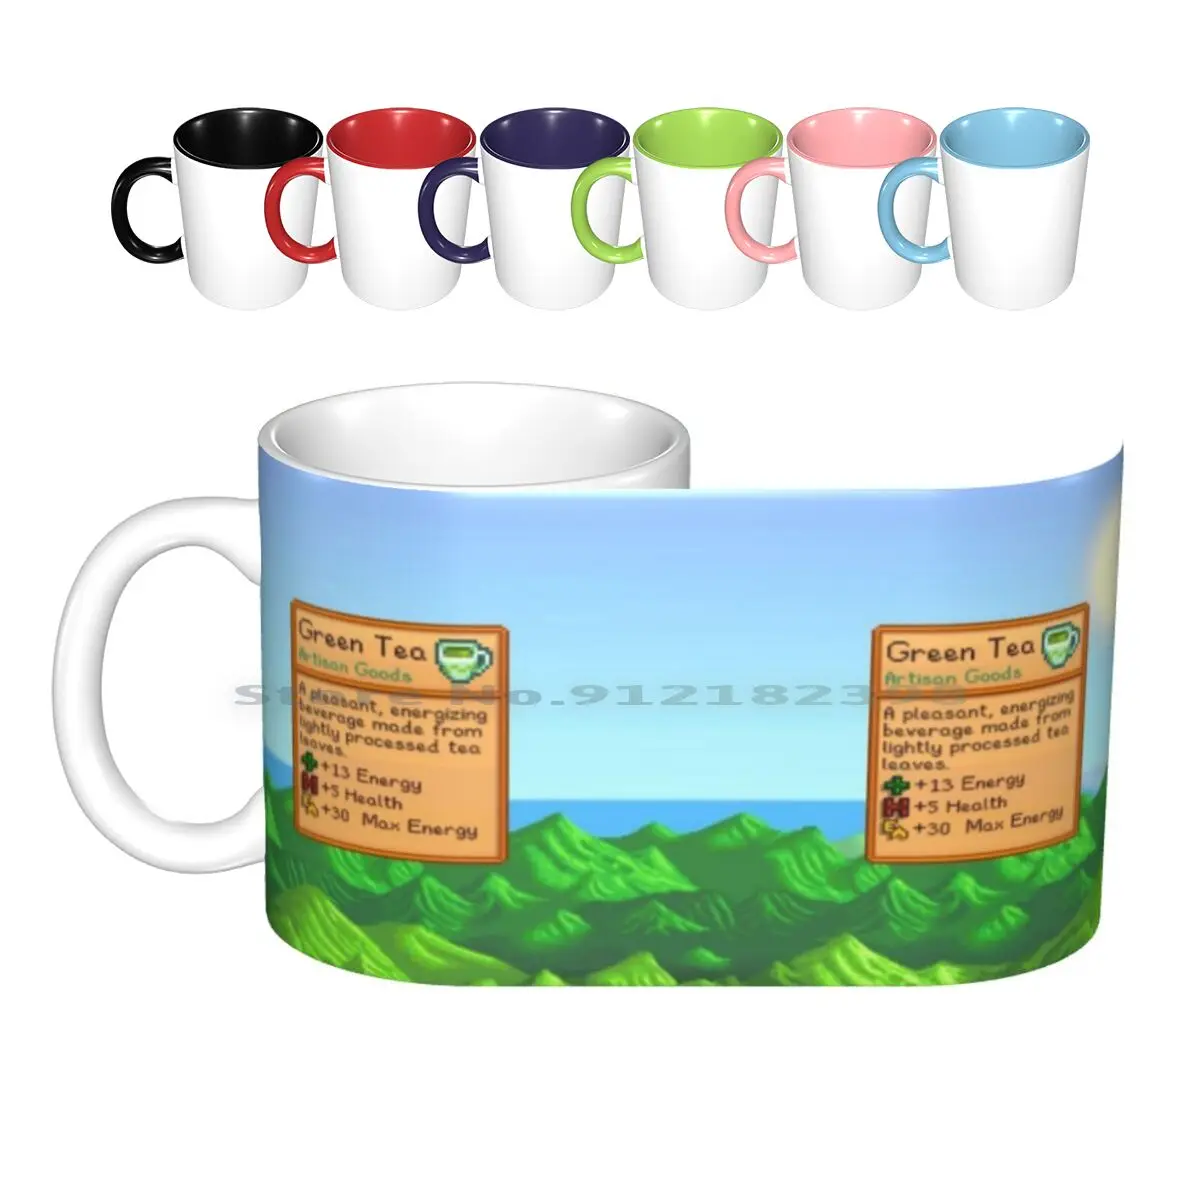 

Кружка Stardew Valley для зеленого чая, керамические кружки, кофейные чашки, креативные чашки для молока, чая, долины, звезд, видеоигр, чашка для нап...